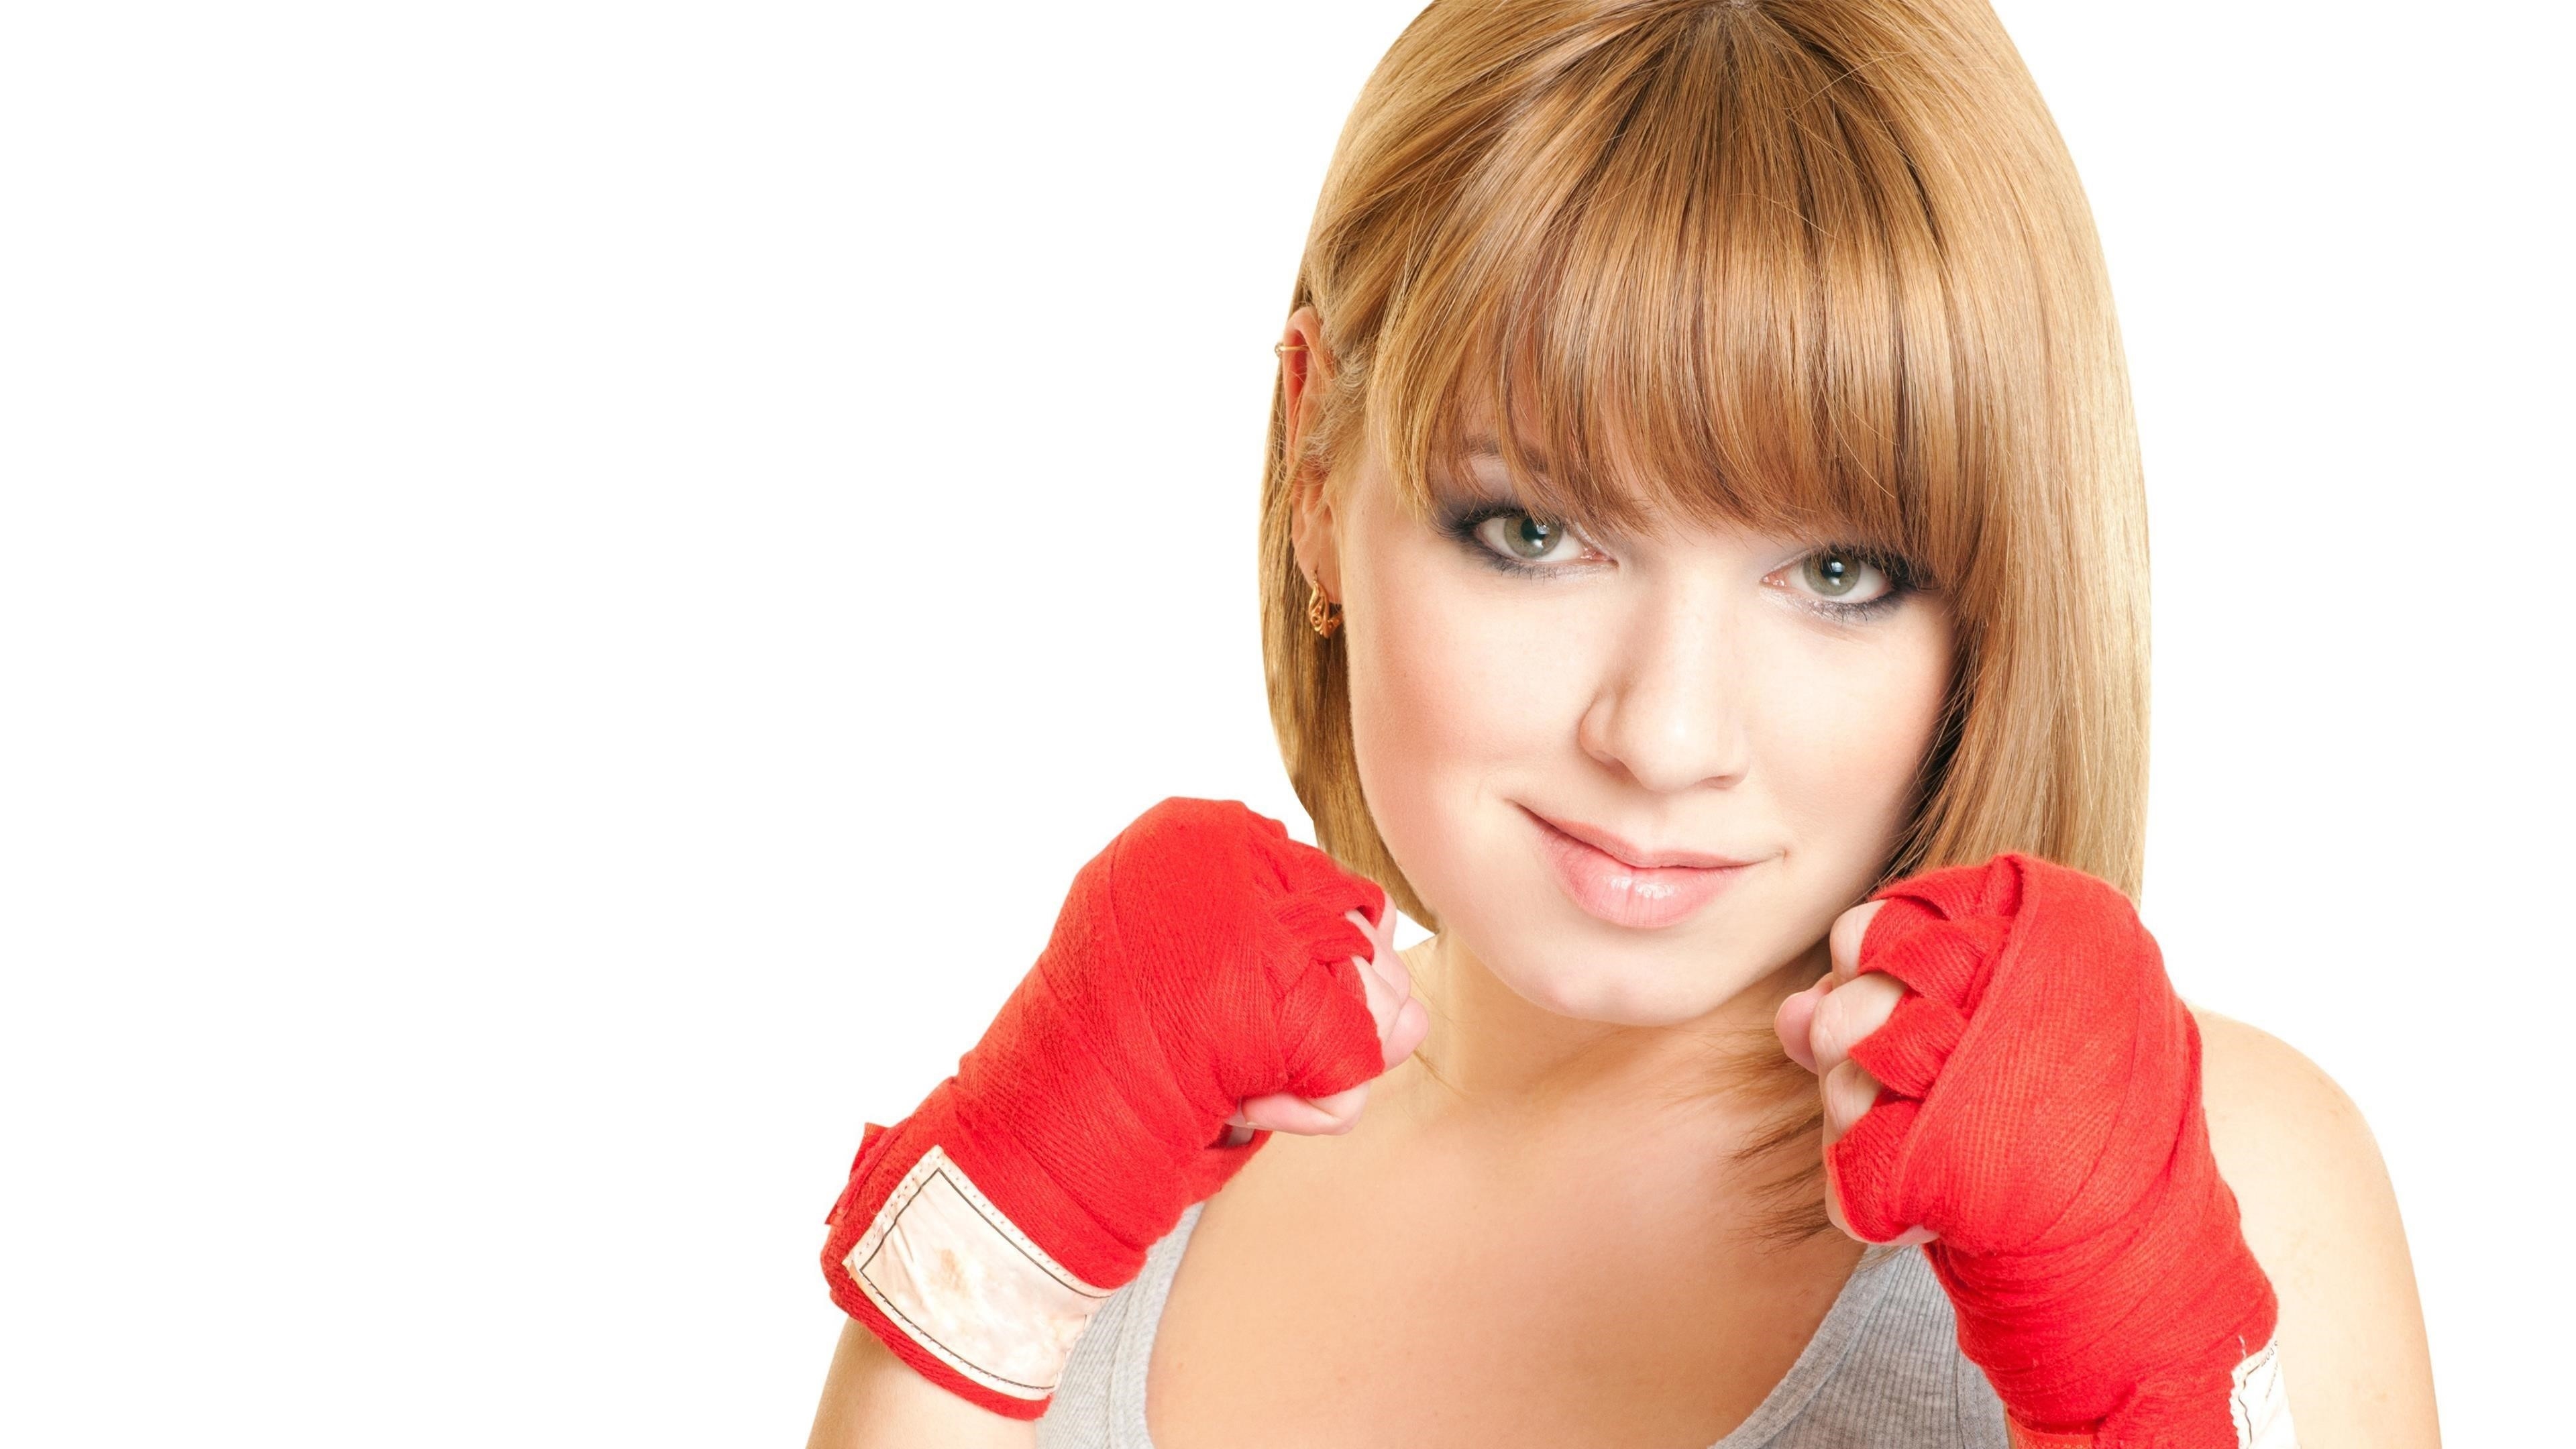 Блондинка с короткими волосами бокс девушка на белом фоне бокс обои скачать